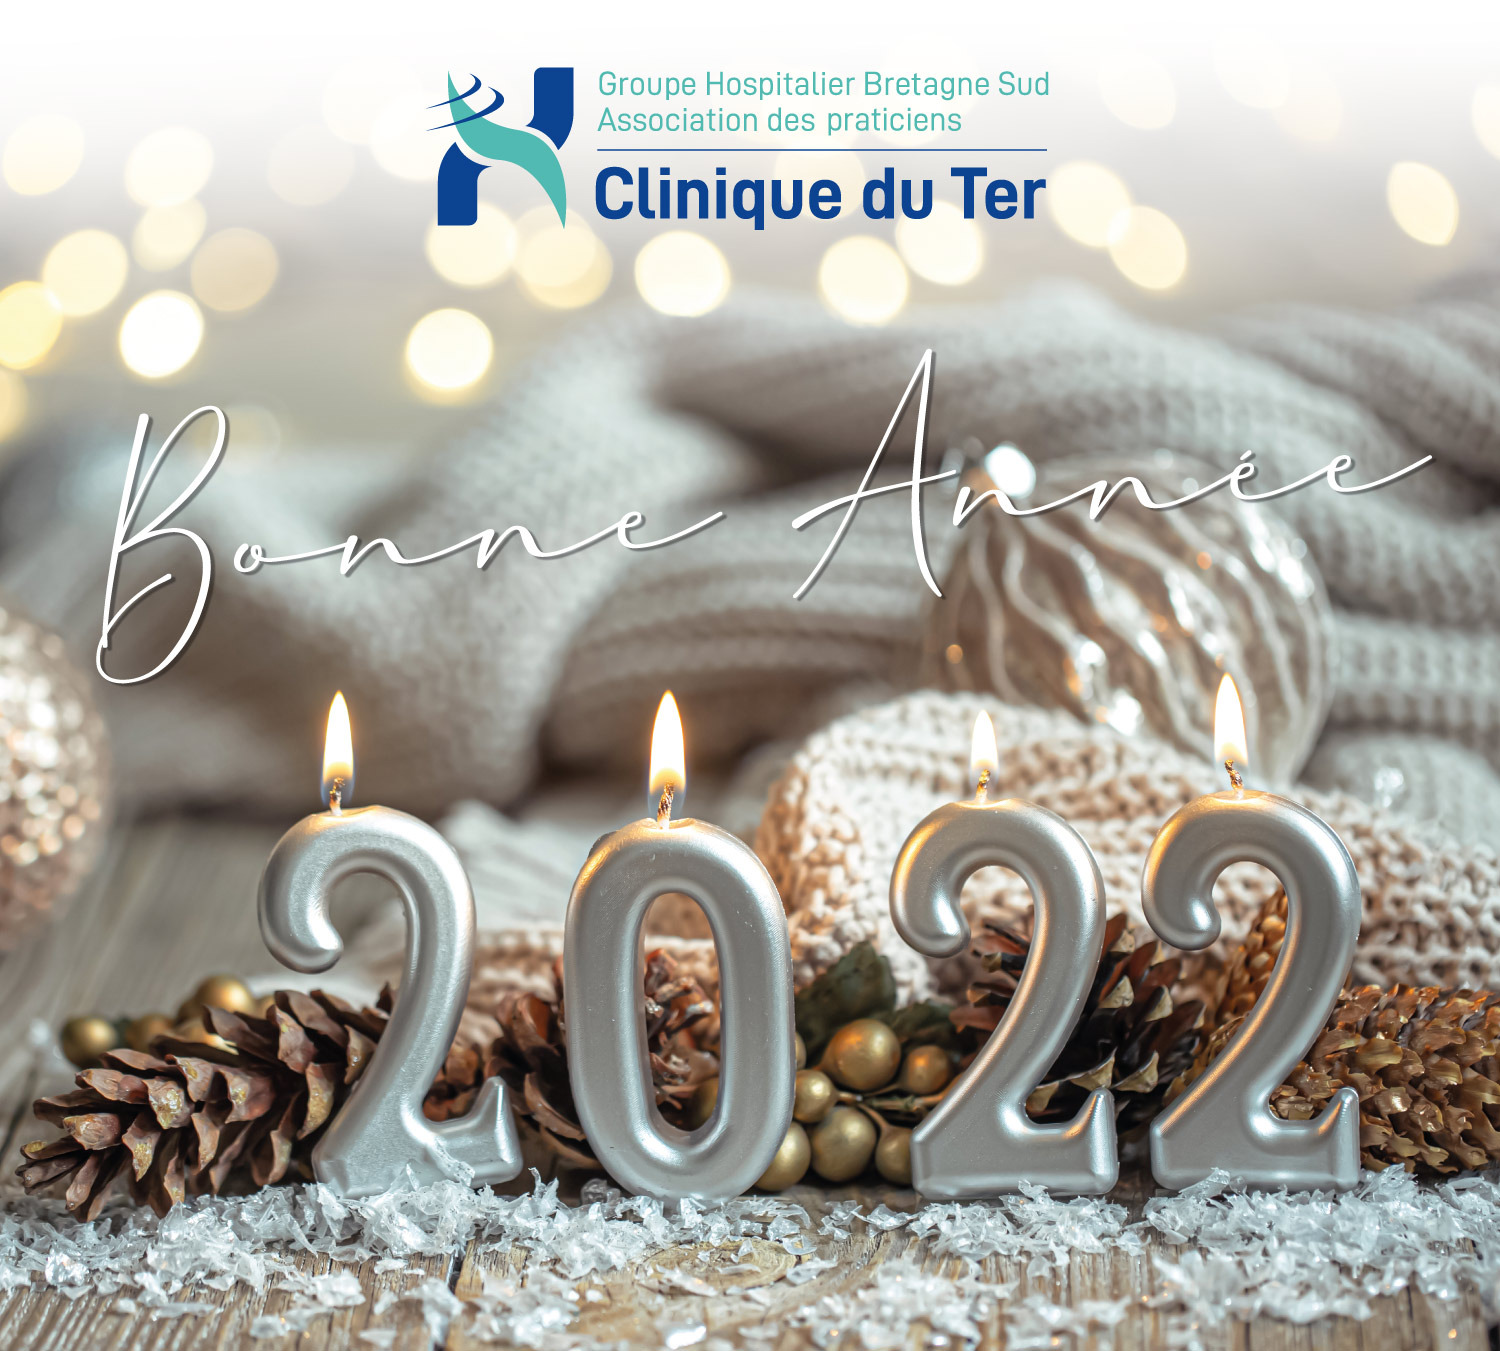 La Clinique du Ter vous souhaite un bon réveillon et une très belle année 2022 !